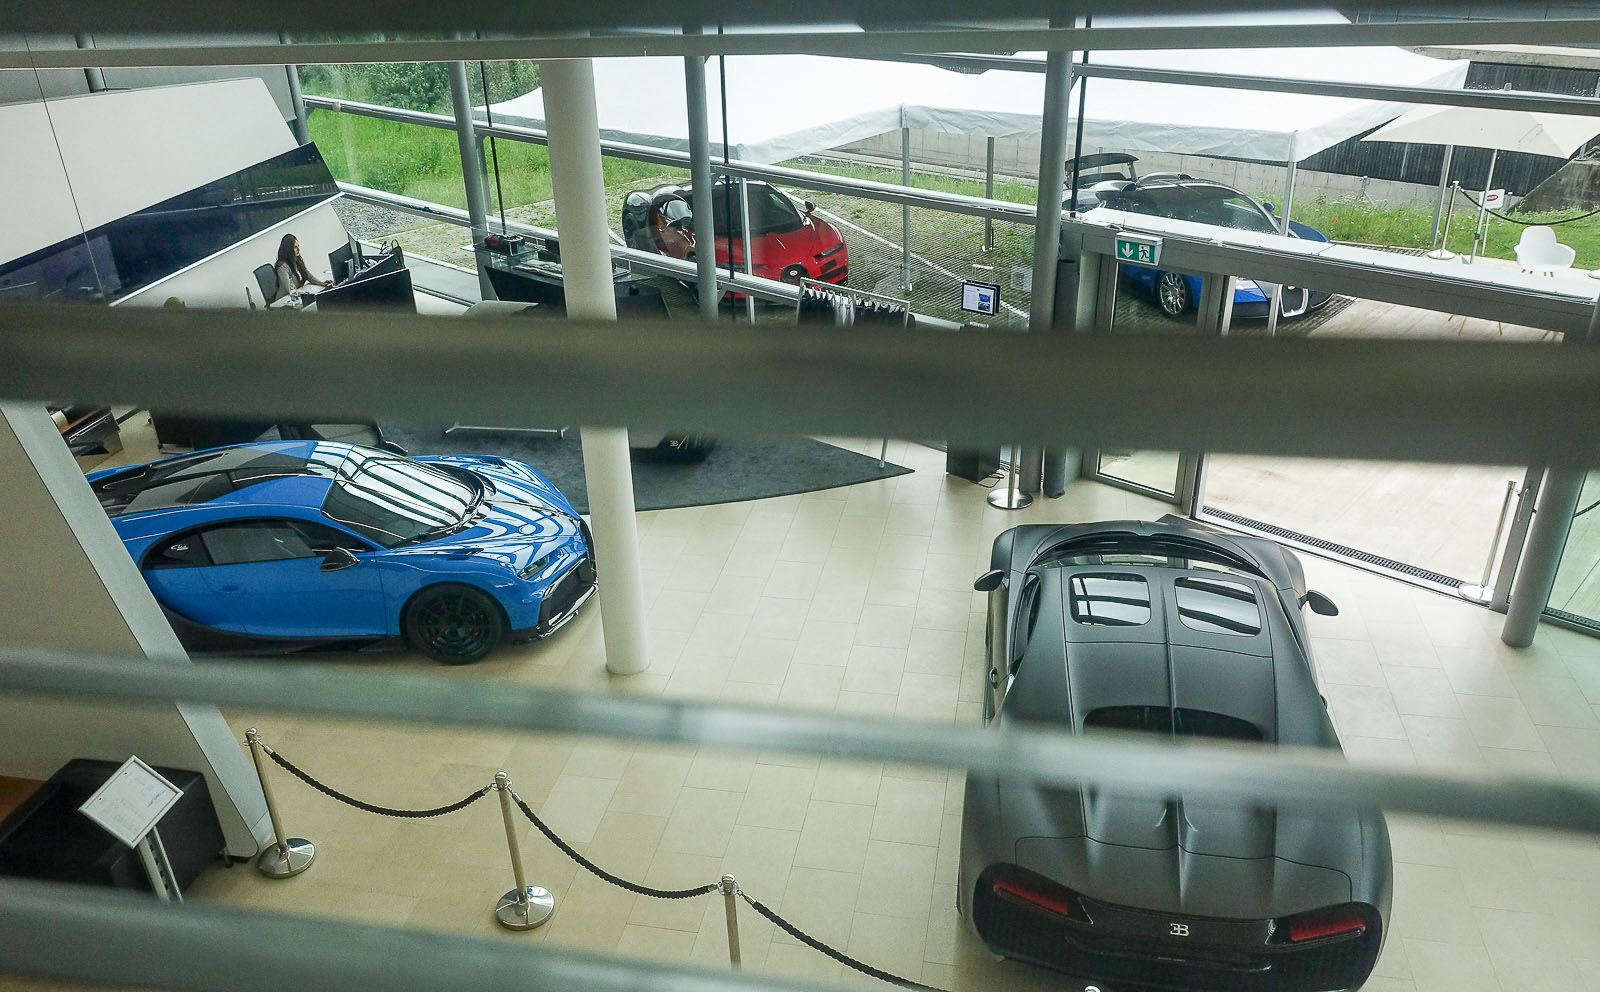 Недавно избранные журналисты были приглашены посмотреть на последнюю модель Bugatti -  Bugatti Pur Sport - в Dörr Group в Мюнхене.